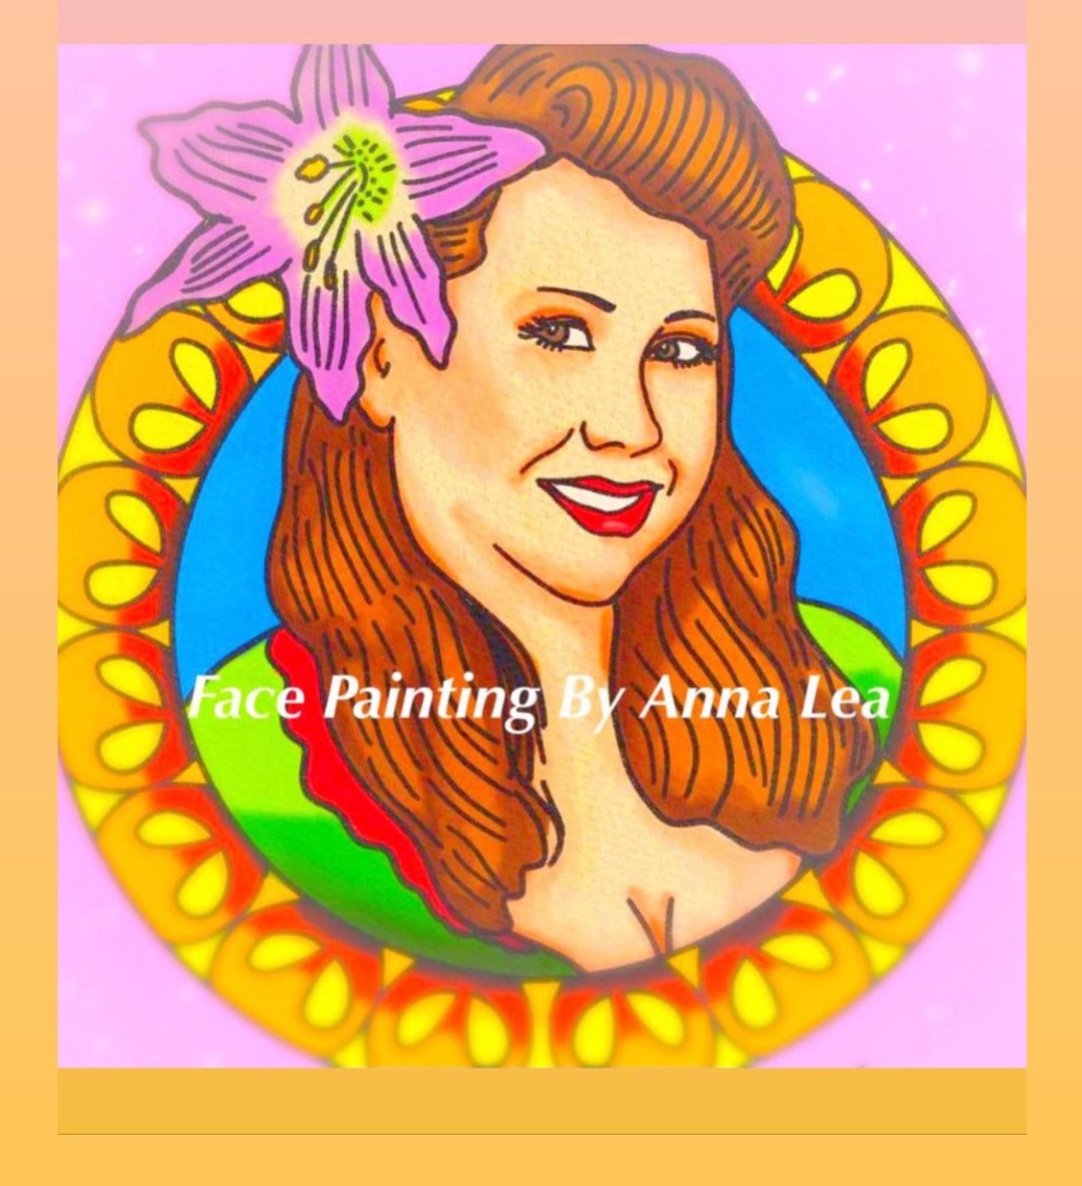 Face+Painting+by+Anna+Lea+logo.jpg